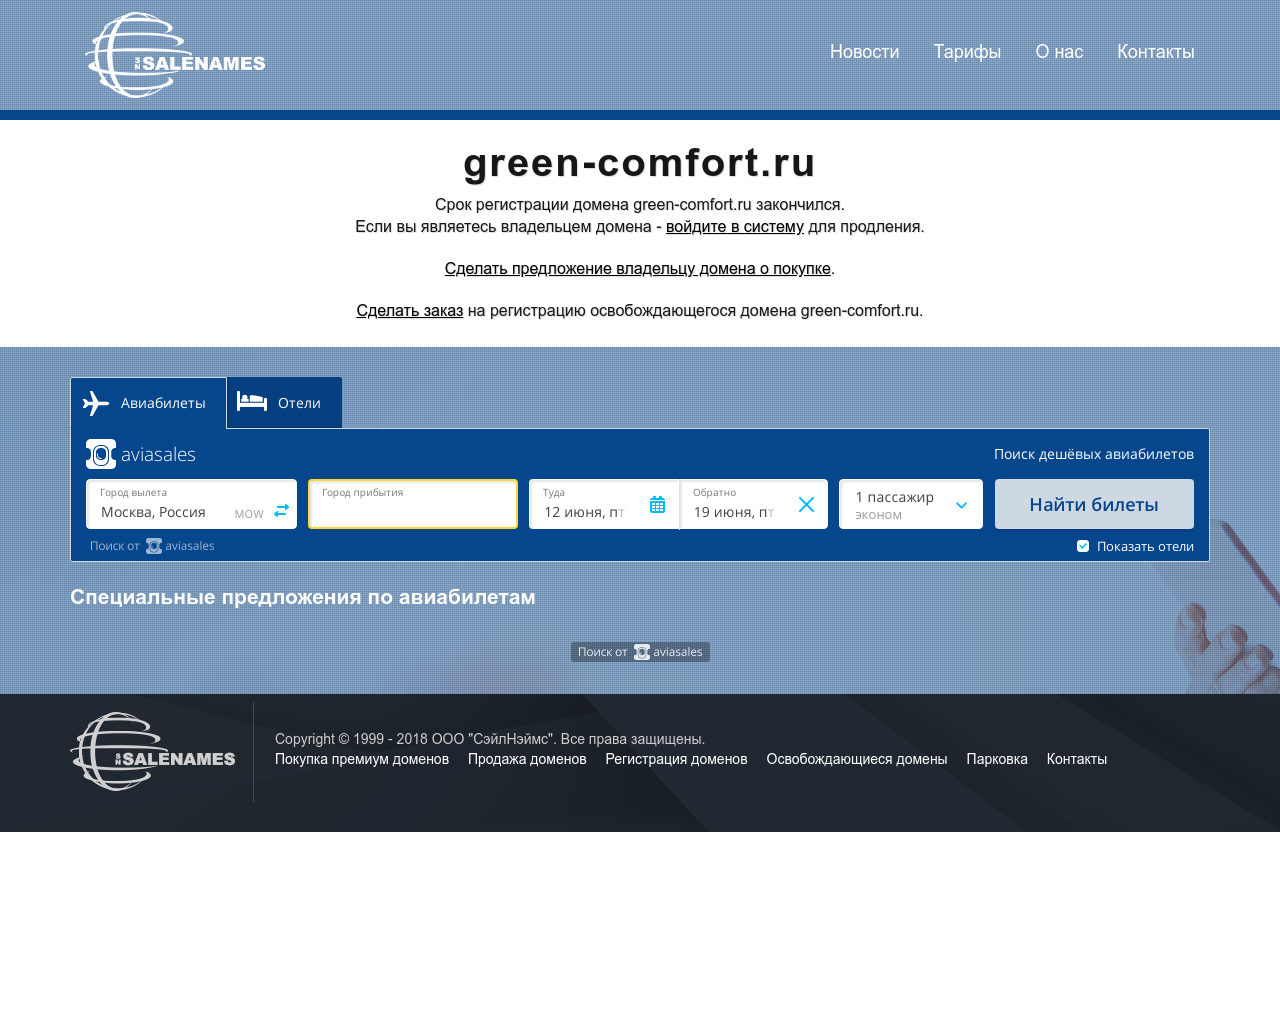 Изображение сайта green-comfort.ru в разрешении 1280x1024